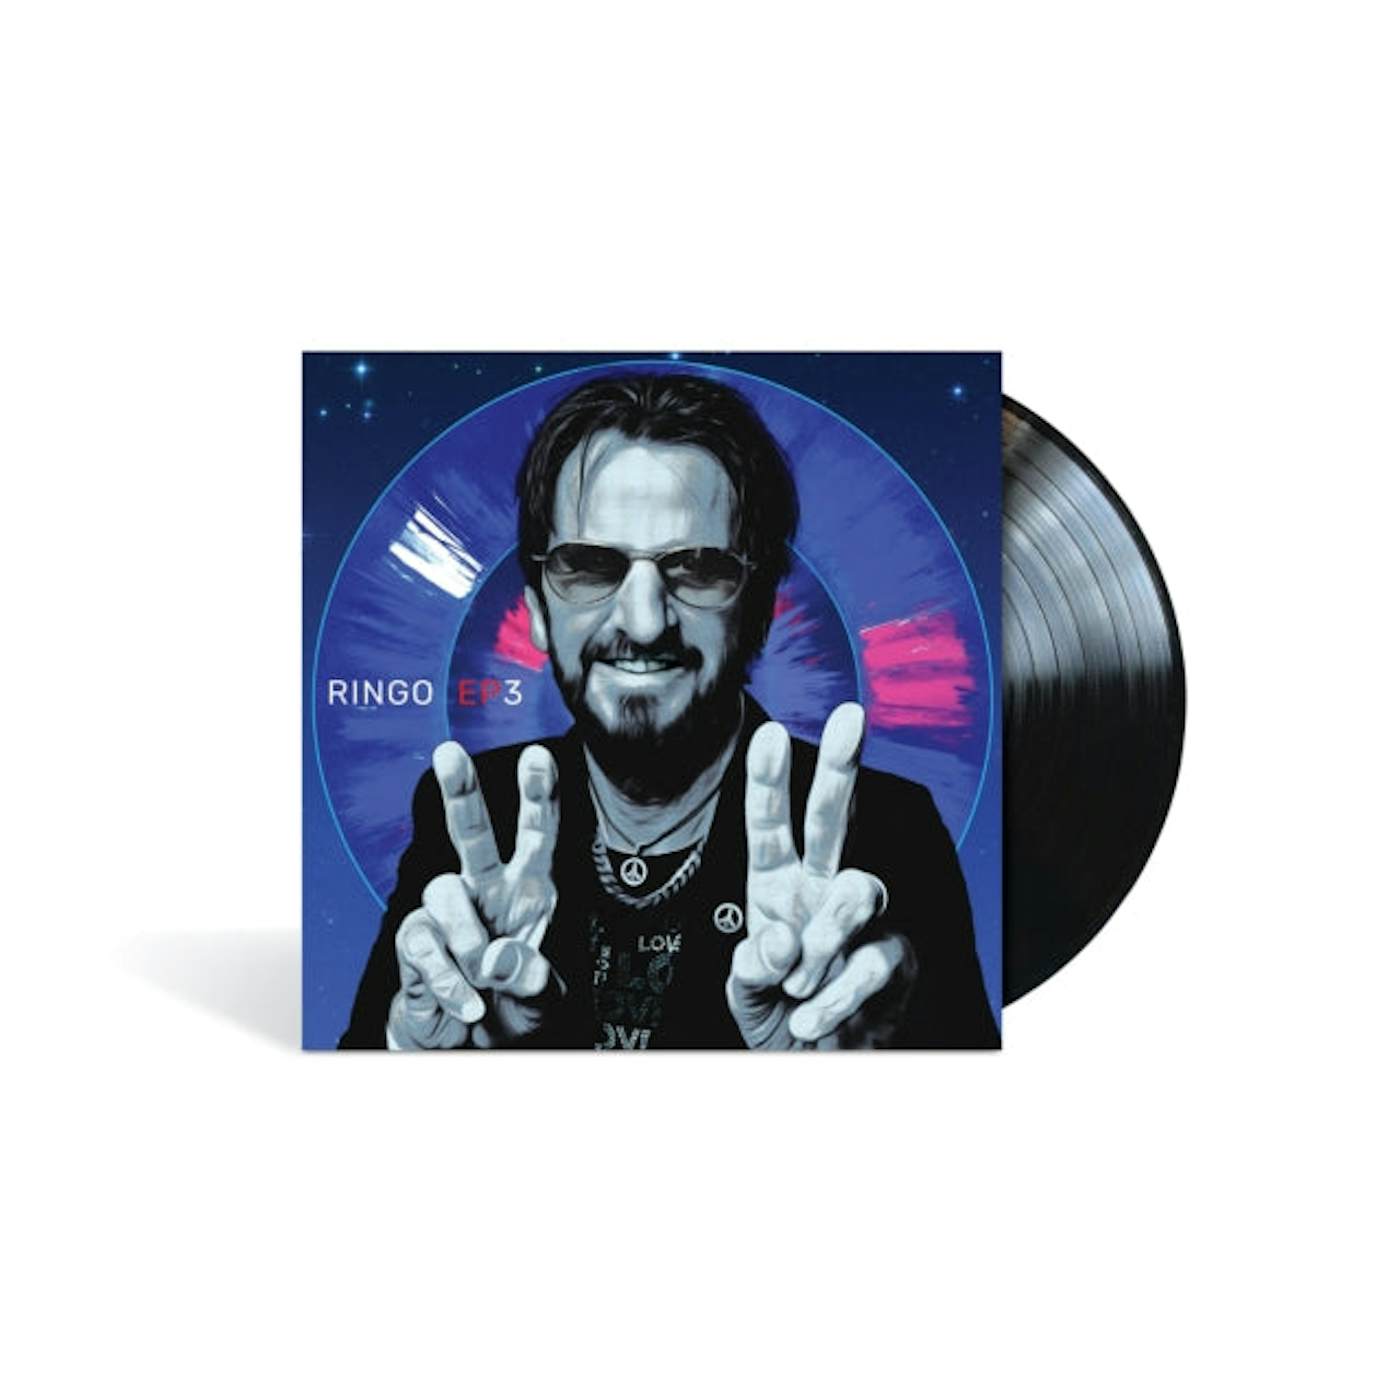 Ringo Starr LP Vinyl Record - Ep3